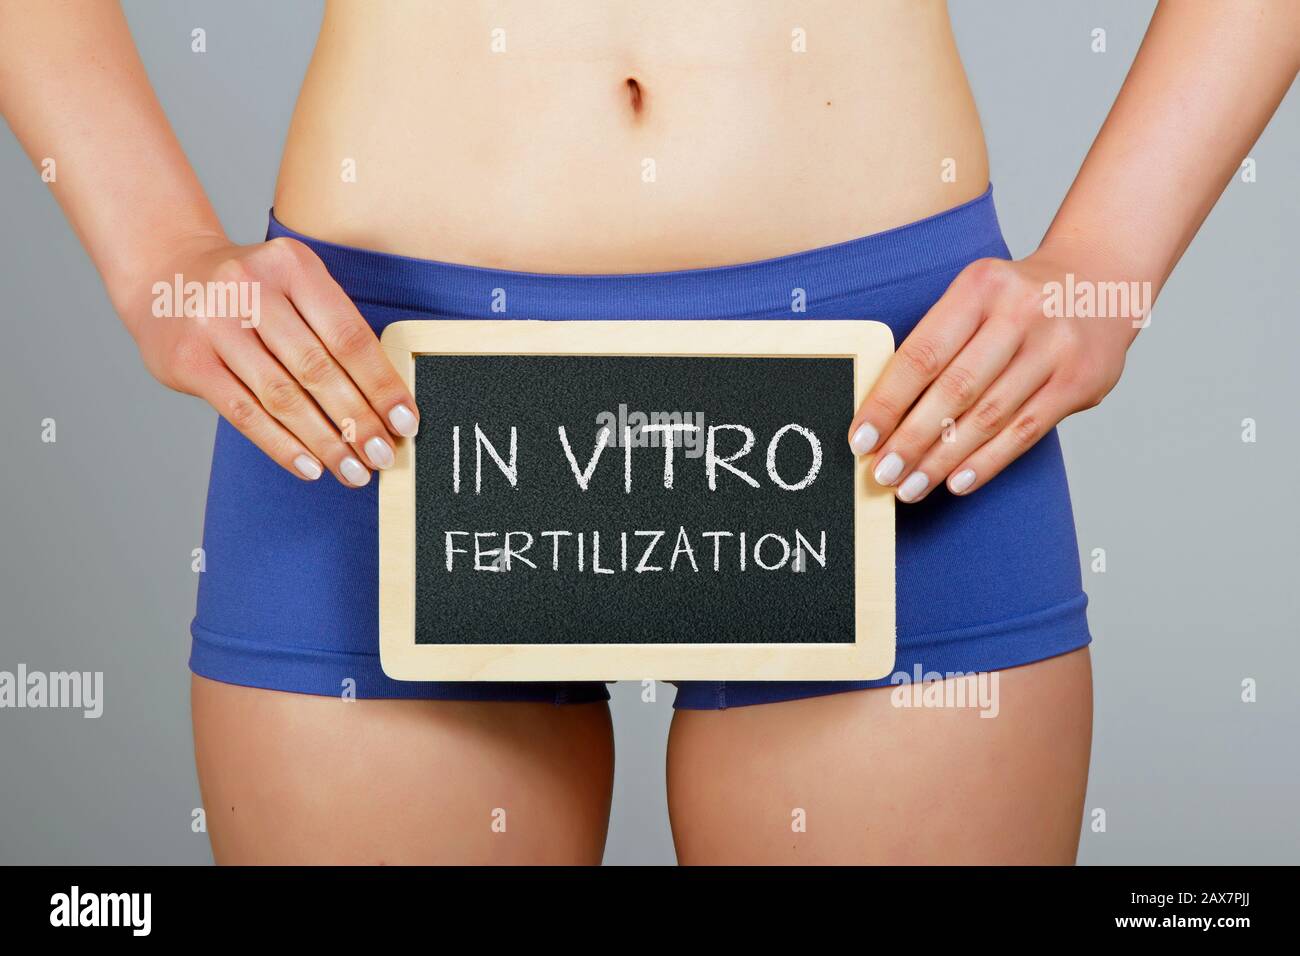 Concimazione in vitro. La donna possiede una piccola lavagna con iscrizione 'IN VITRO Fertilization' Foto Stock